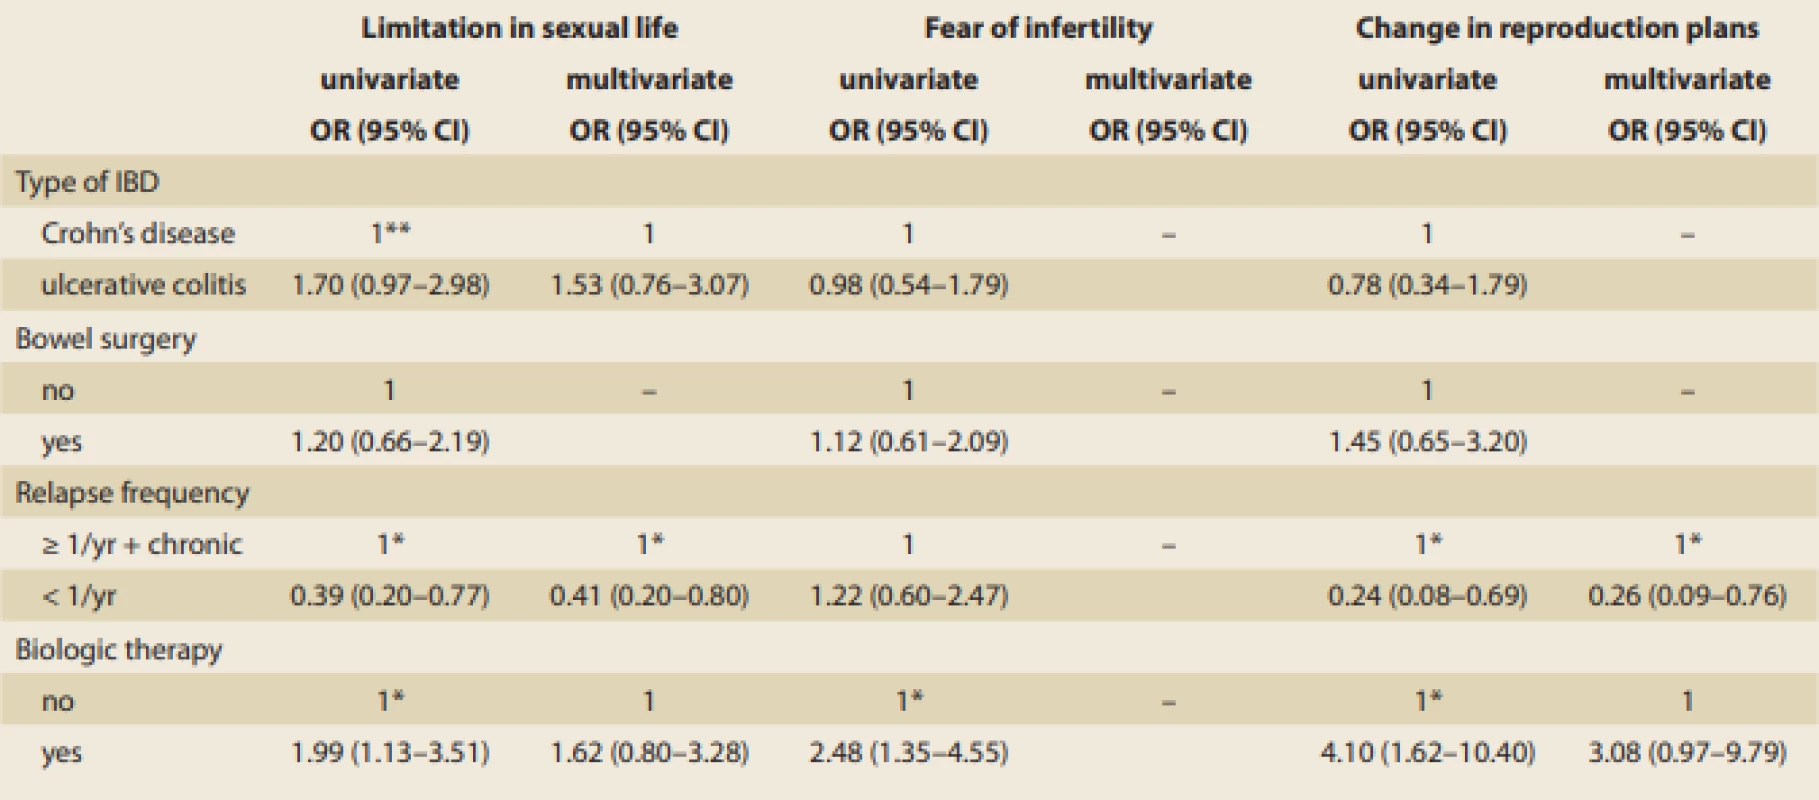 Clinical factors associated with reproductive outcomes in males with inflammatory bowel disease (IBD).<br>
Tab. 4. Klinické faktory ovlivňující reprodukční chování a plány u pacientů s idiopatickými střevními záněty (IBD).